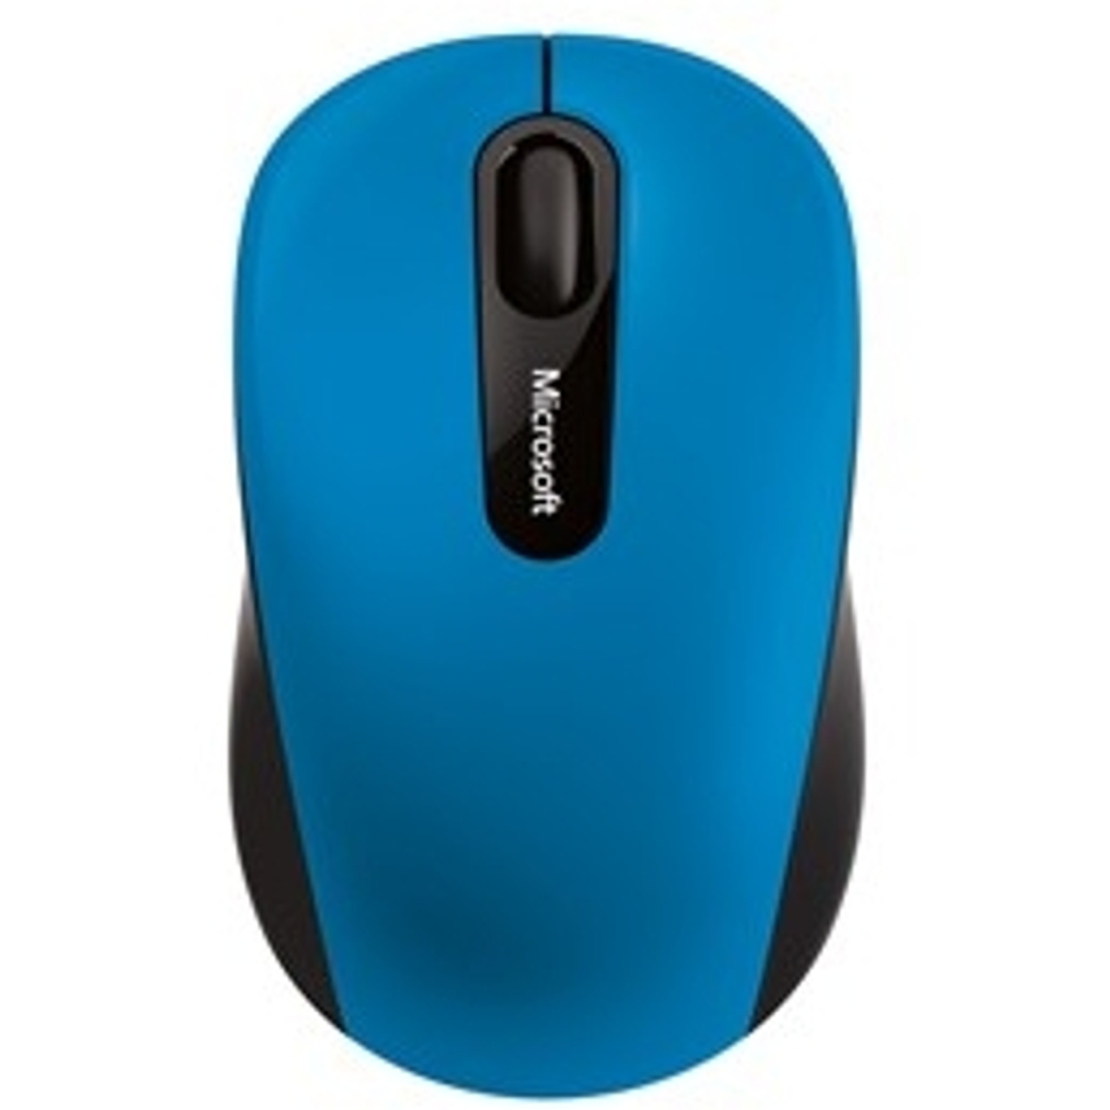 עכבר אלחוטי Microsoft Bluetooth Mbl Mse3600 Dark Blue